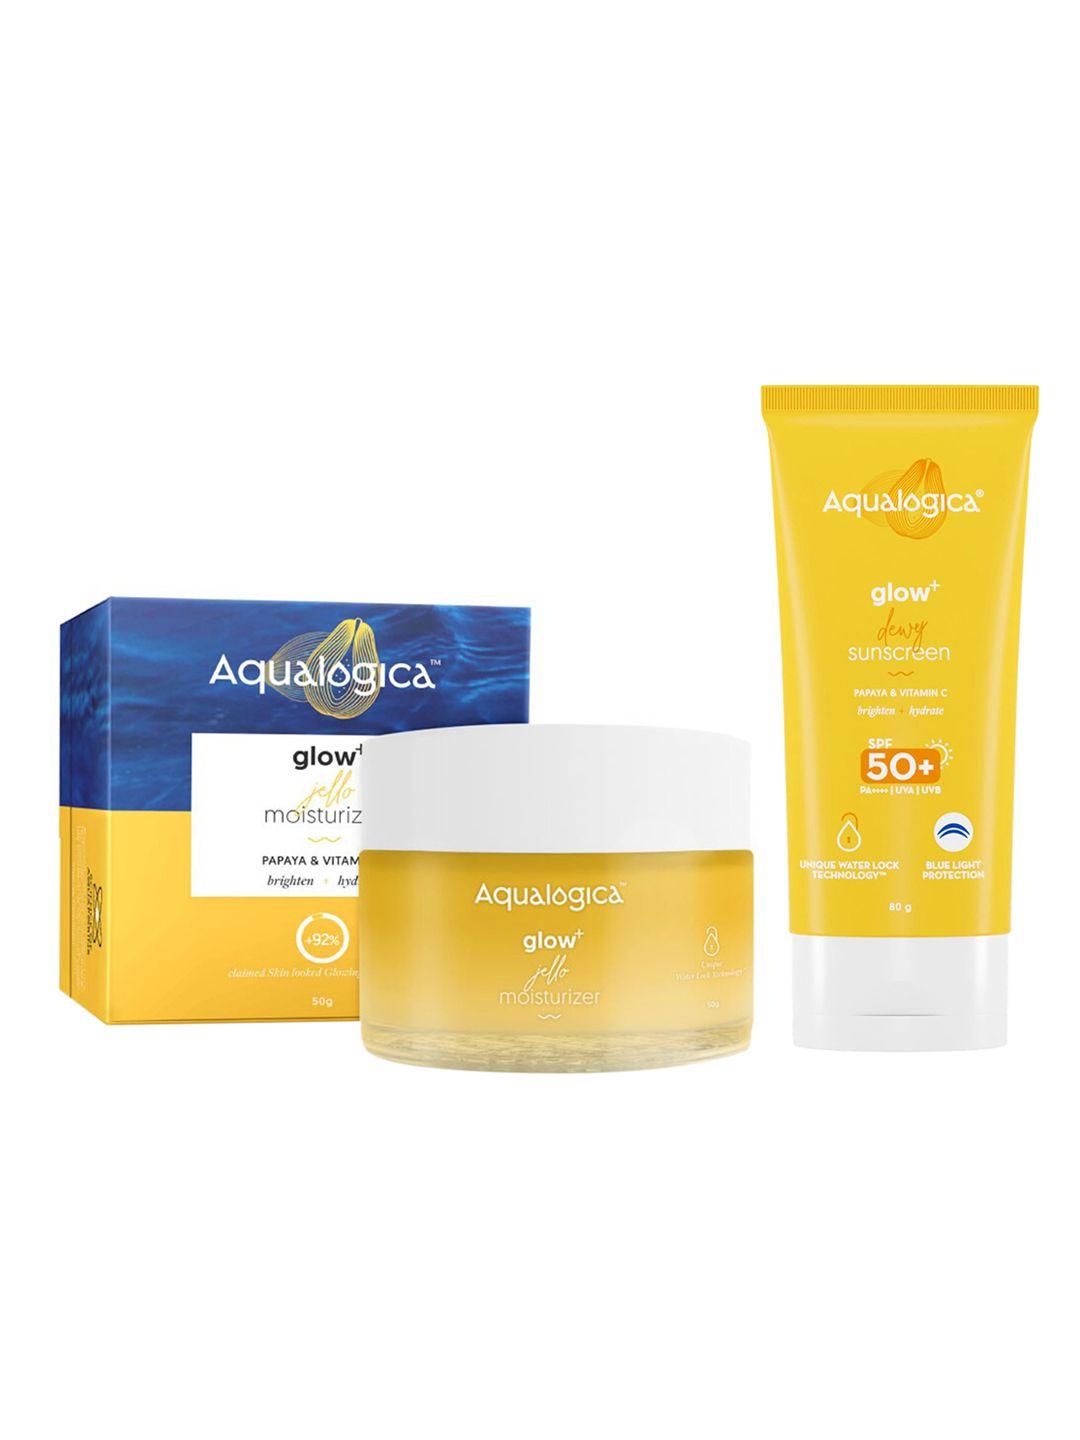 aqualogica summer glow kit - face moisturiser & sunscreen